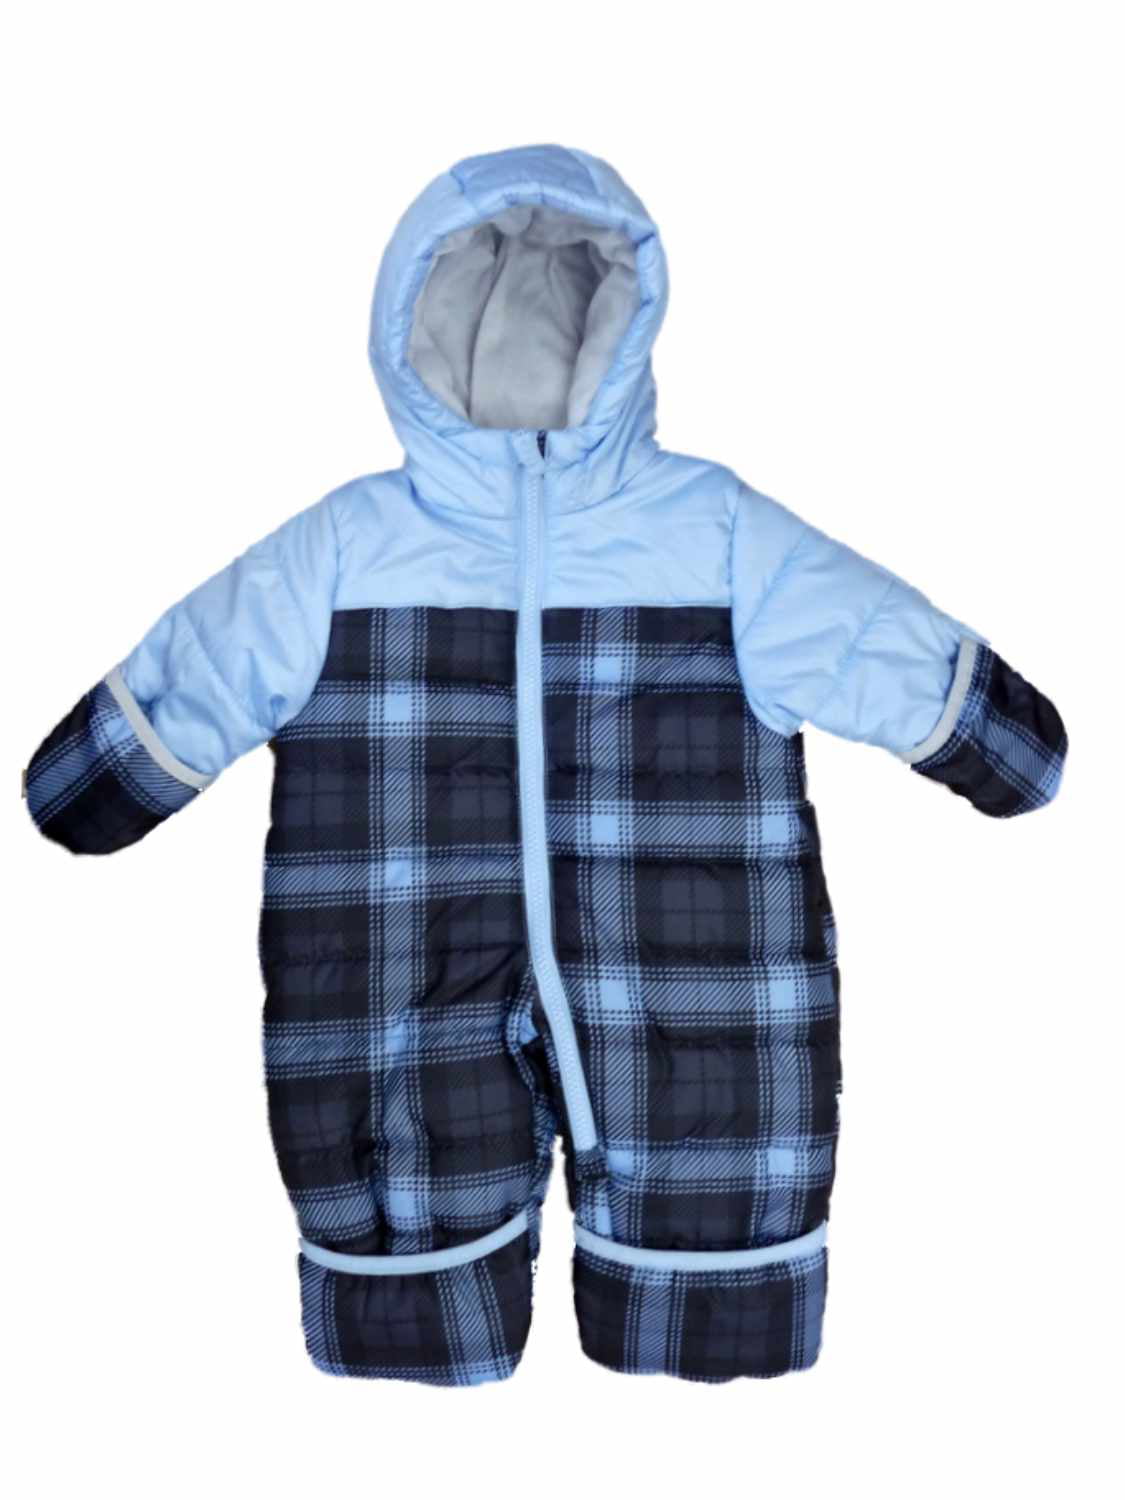 Carter's Carters Infant Boys Blue Plaid Quilted Snowsuit Baby Pram Snow Suit